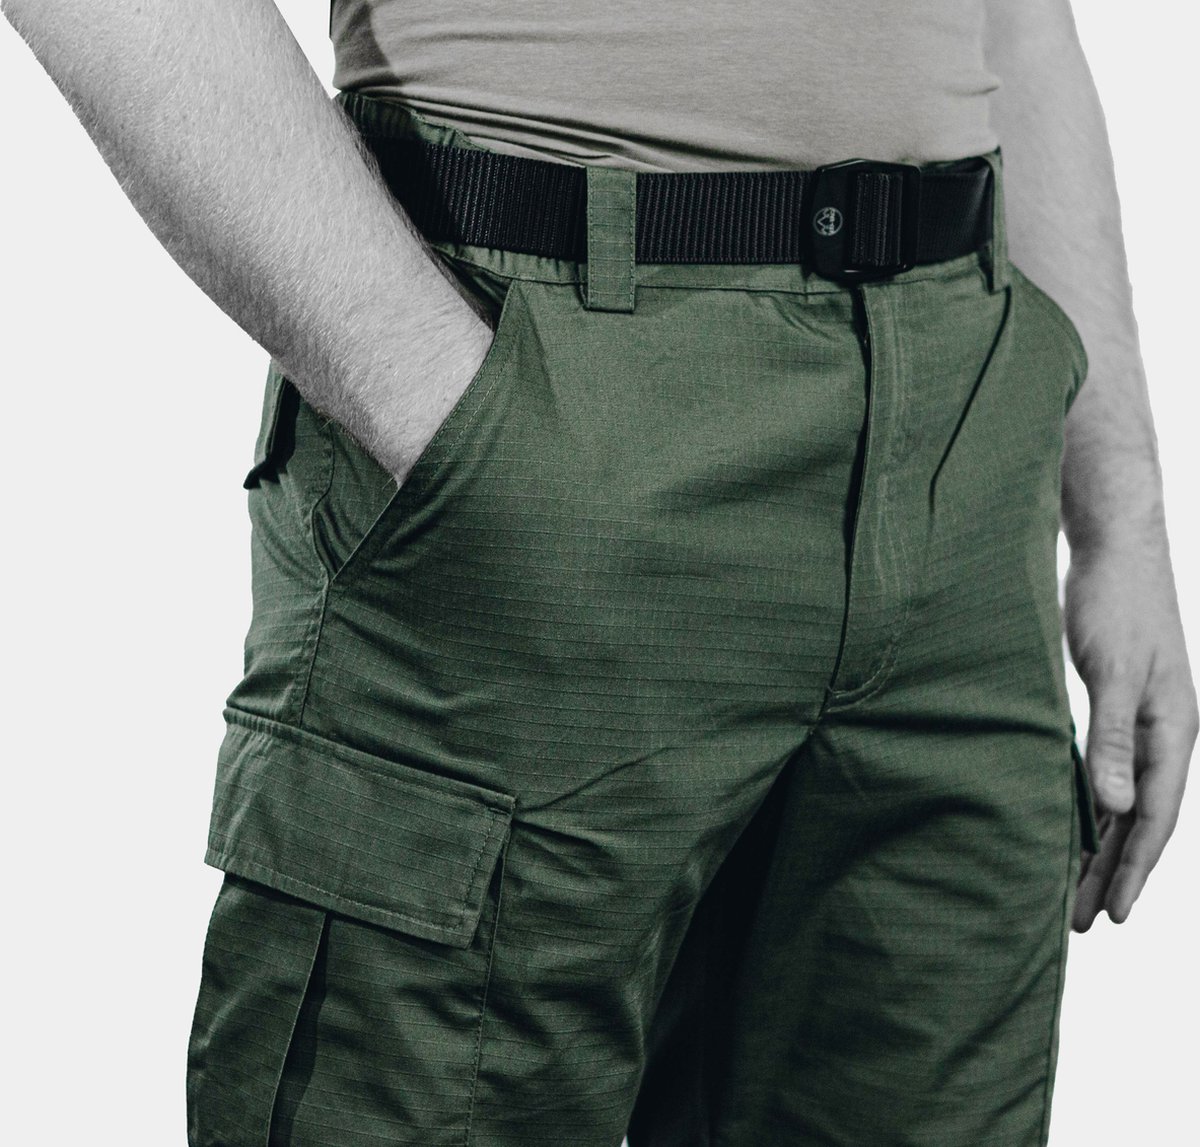 EU-TAC Combat Pants - Tactical Pants - Militaire Broek - Tactical Combat Pants - Airsoft - Airsoft Broek - Militaire kleding - Groen - Green - Maat L